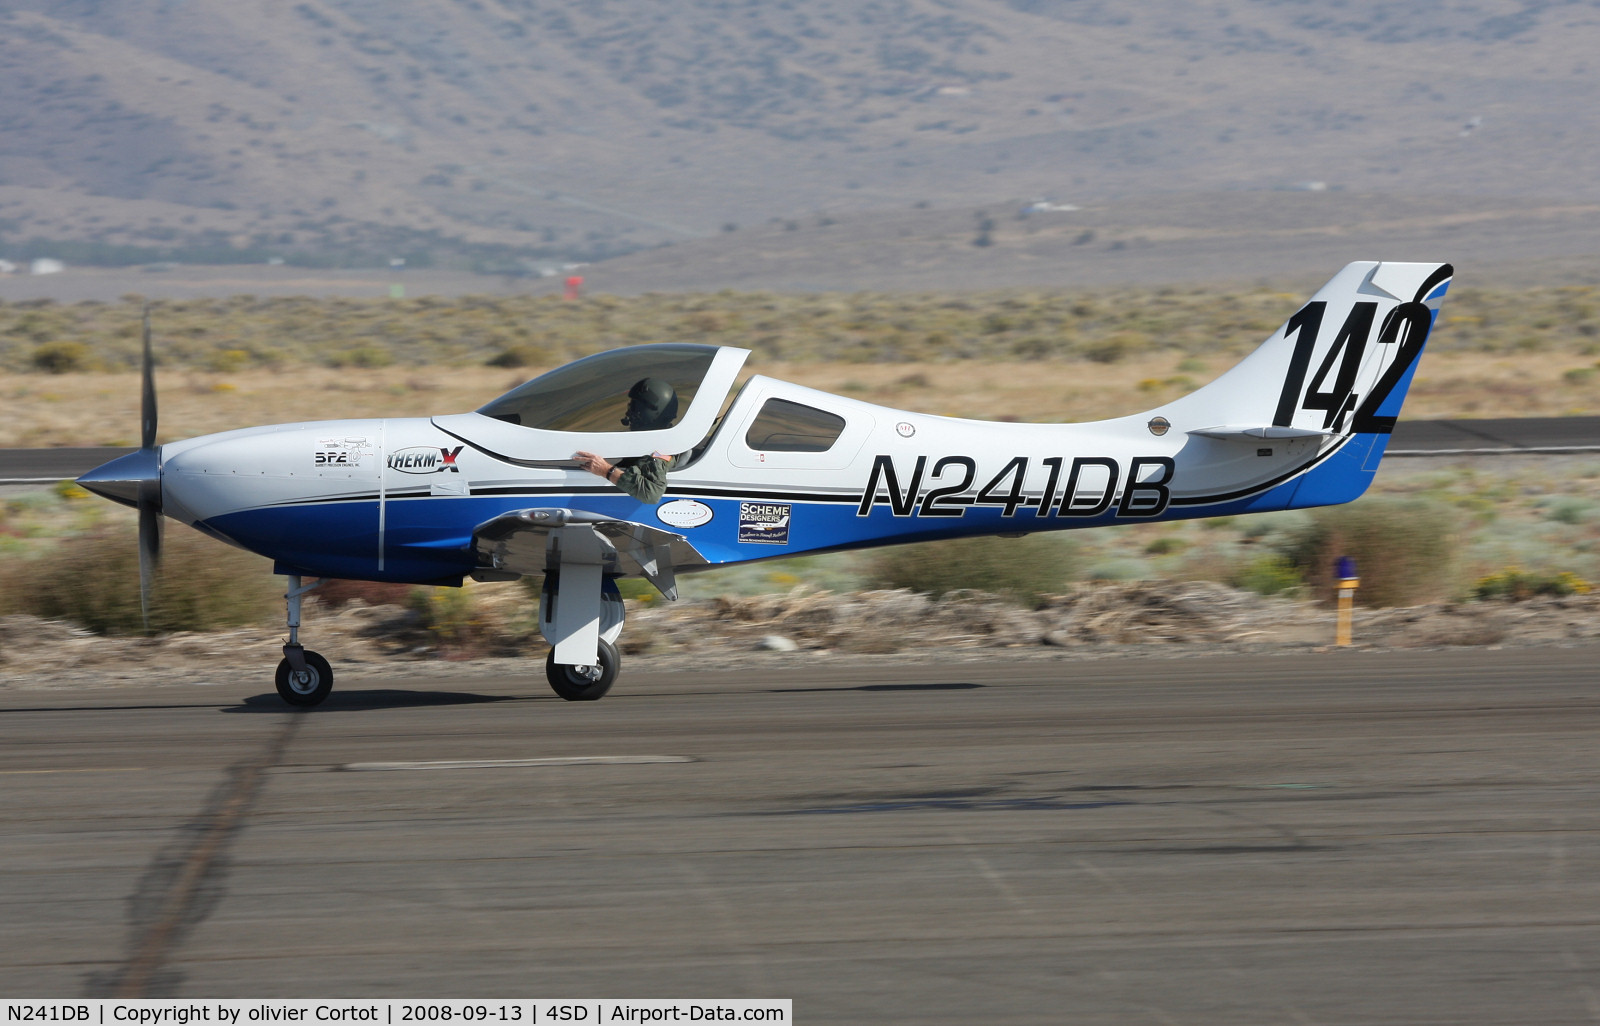 N241DB, 2007 Lancair Legacy C/N L2K-290, taken during the Reno Air races 2008